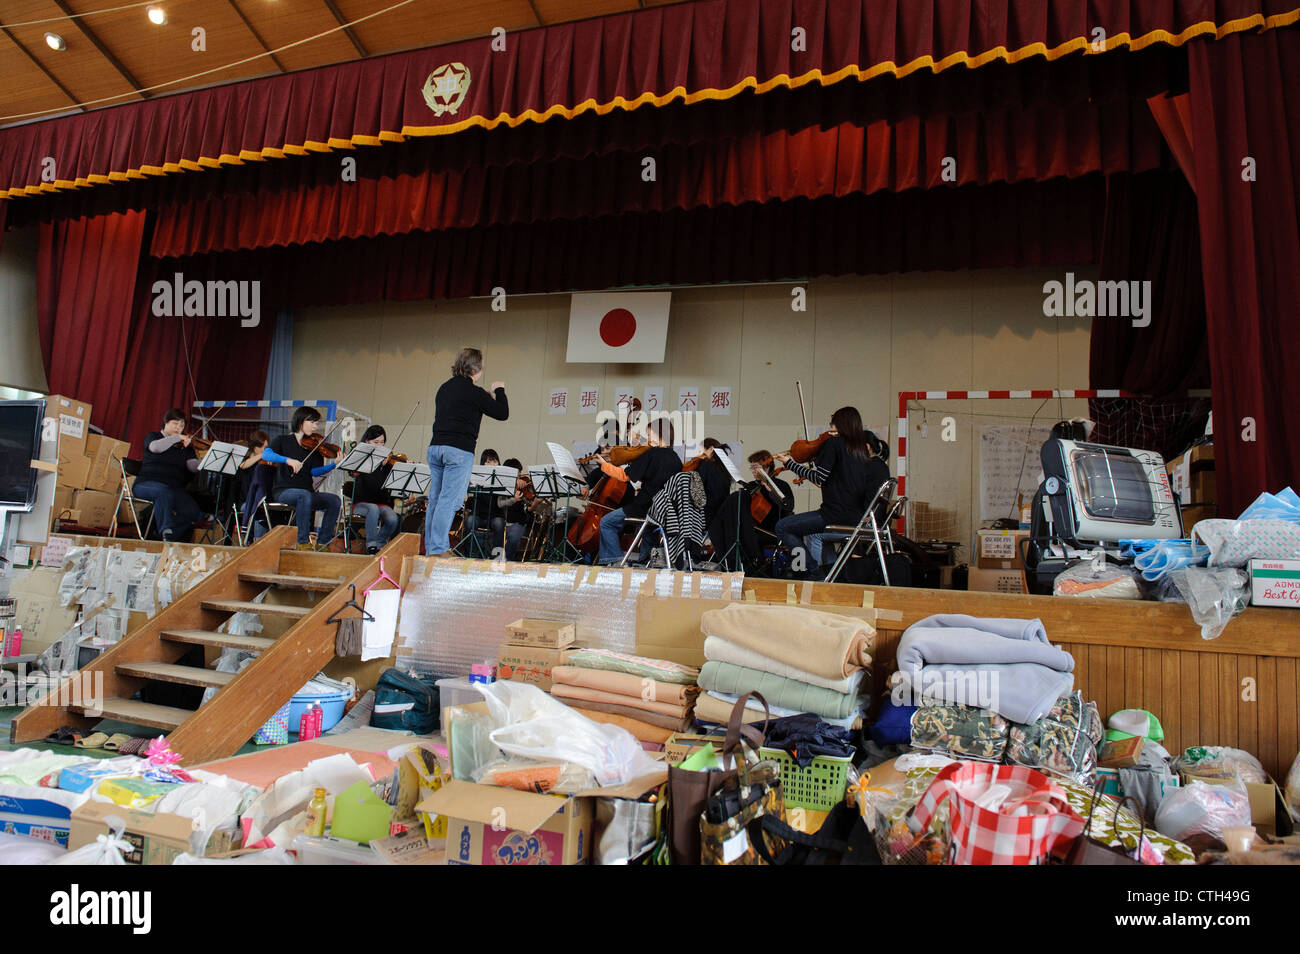 Le rendement de l'organisme de bienfaisance tokyo sinfonia, après le tsunami, Sendai, miyagi Prefecture, Japan Banque D'Images